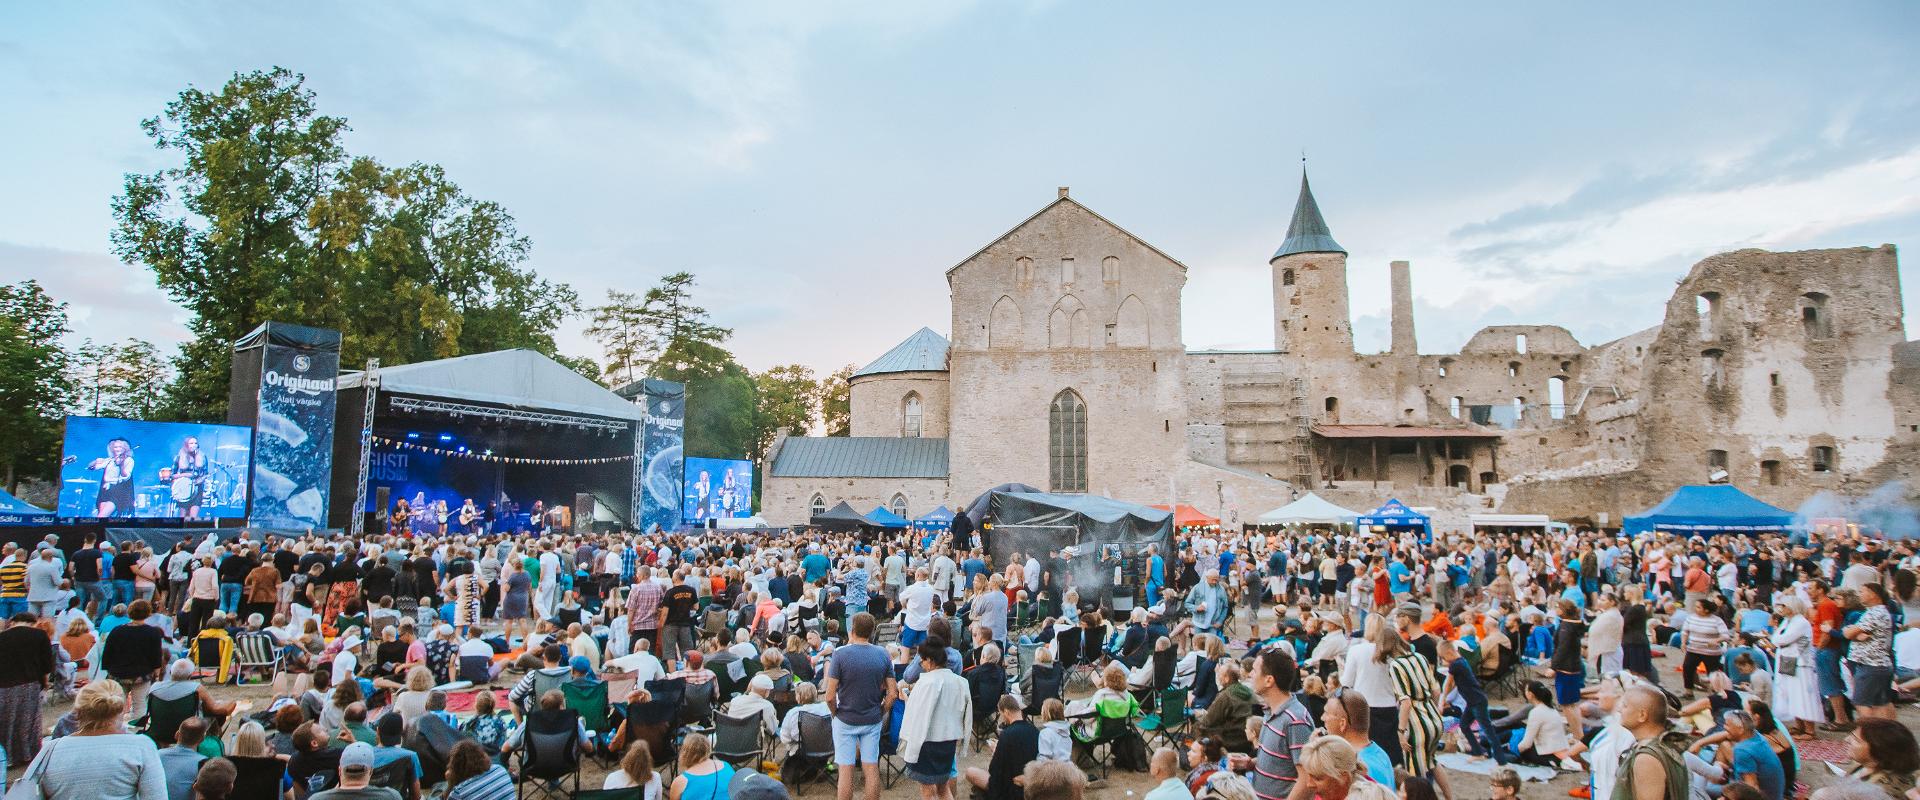 Die Hauptkonzerte des Festivals finden auf dem Hof der alten Bischofsburg an zwei Abenden statt, es werden Künstler aus 10 Ländern erwartet. Zum Tages